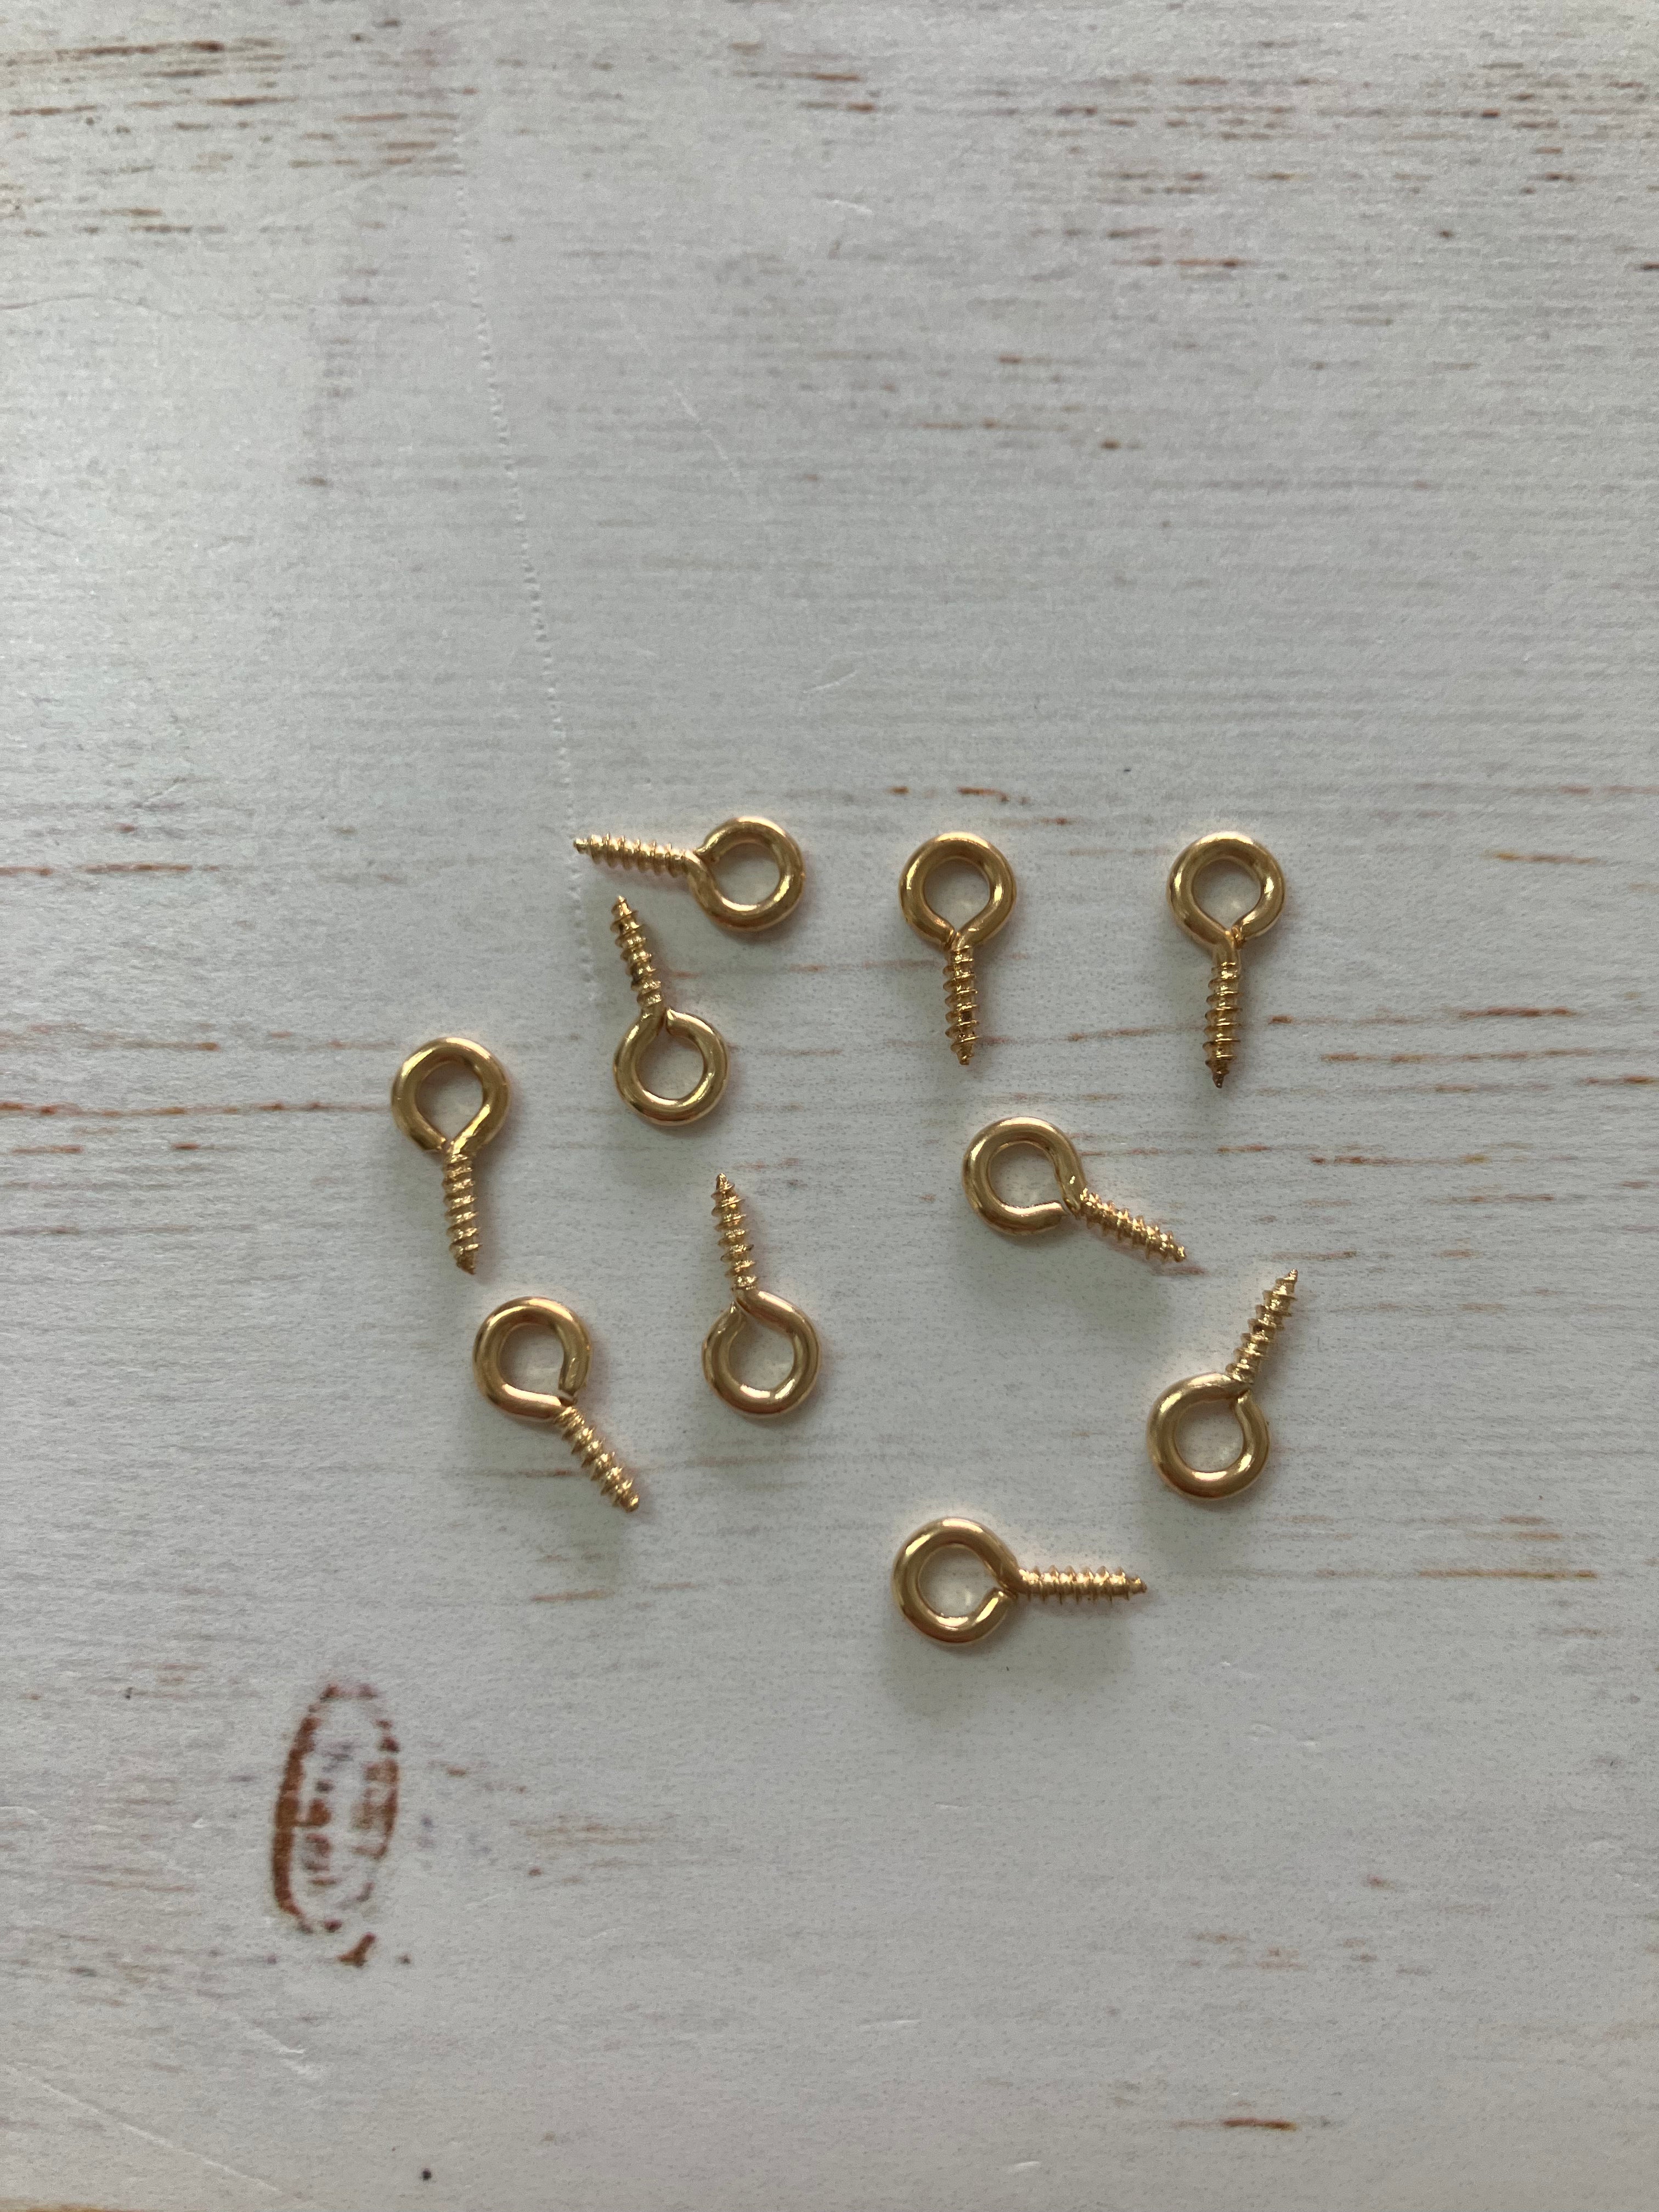 Gold eye pins (10 pins)